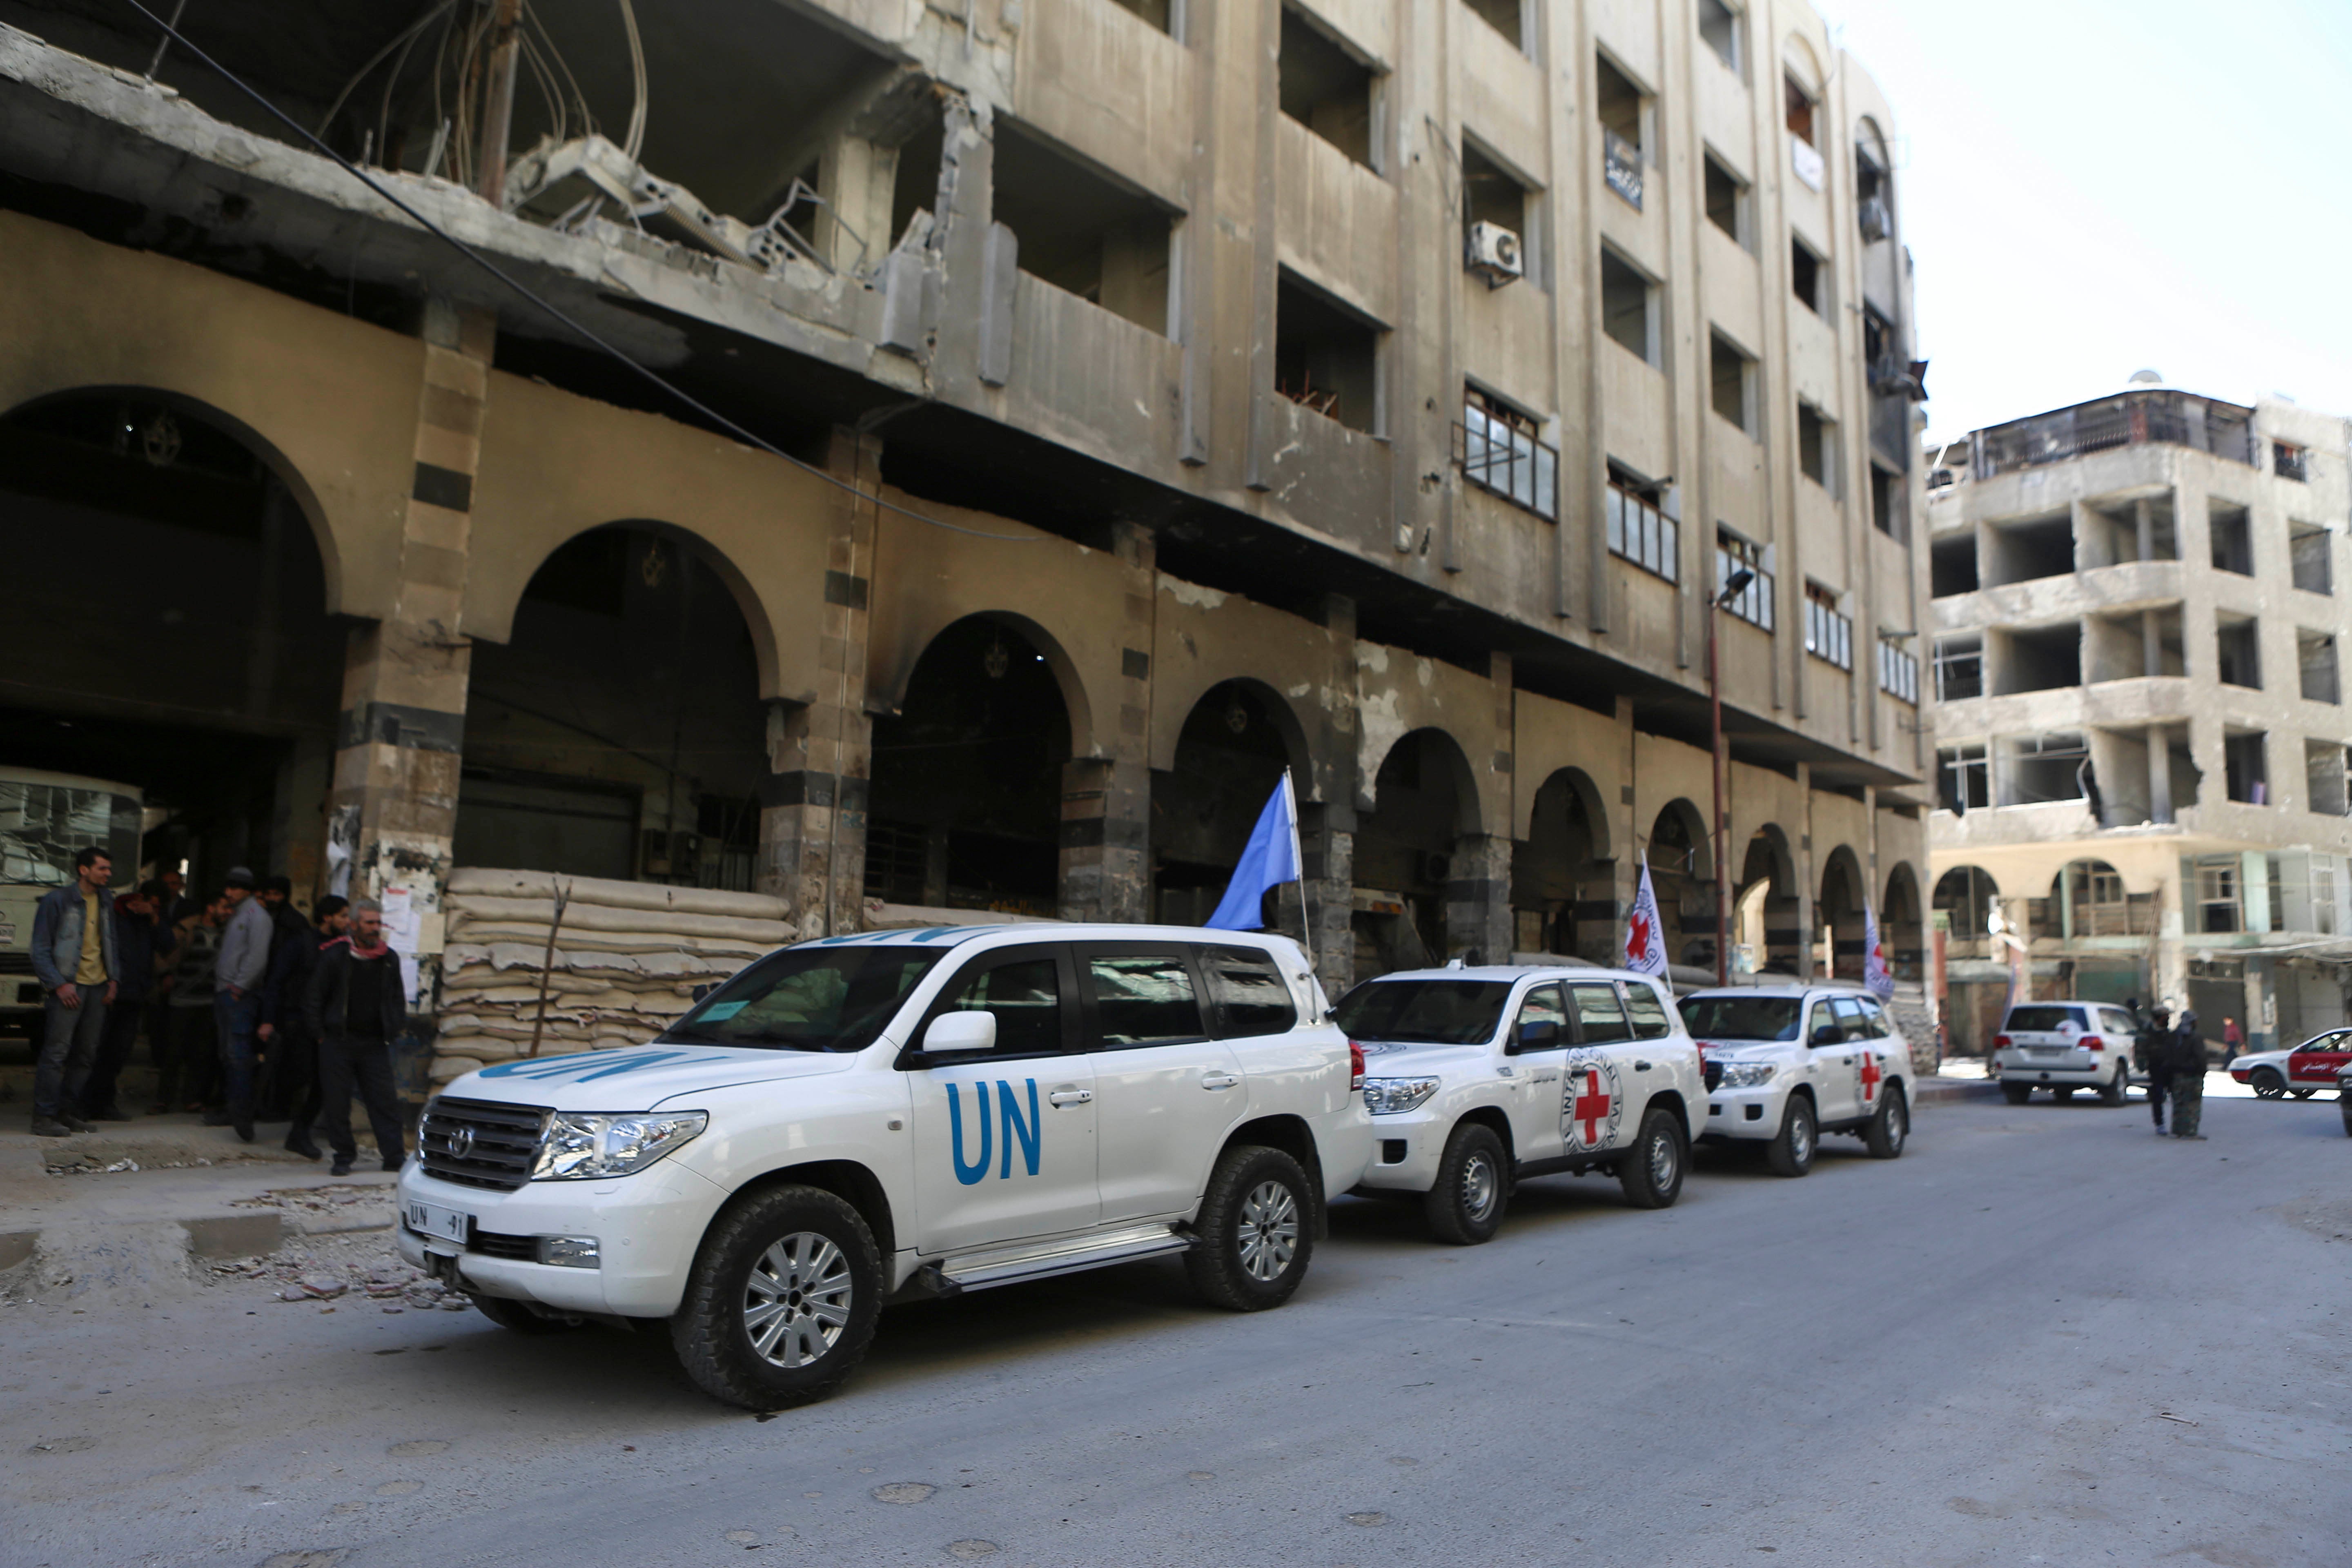 Syria: Major Problems with UN Procurement Practices